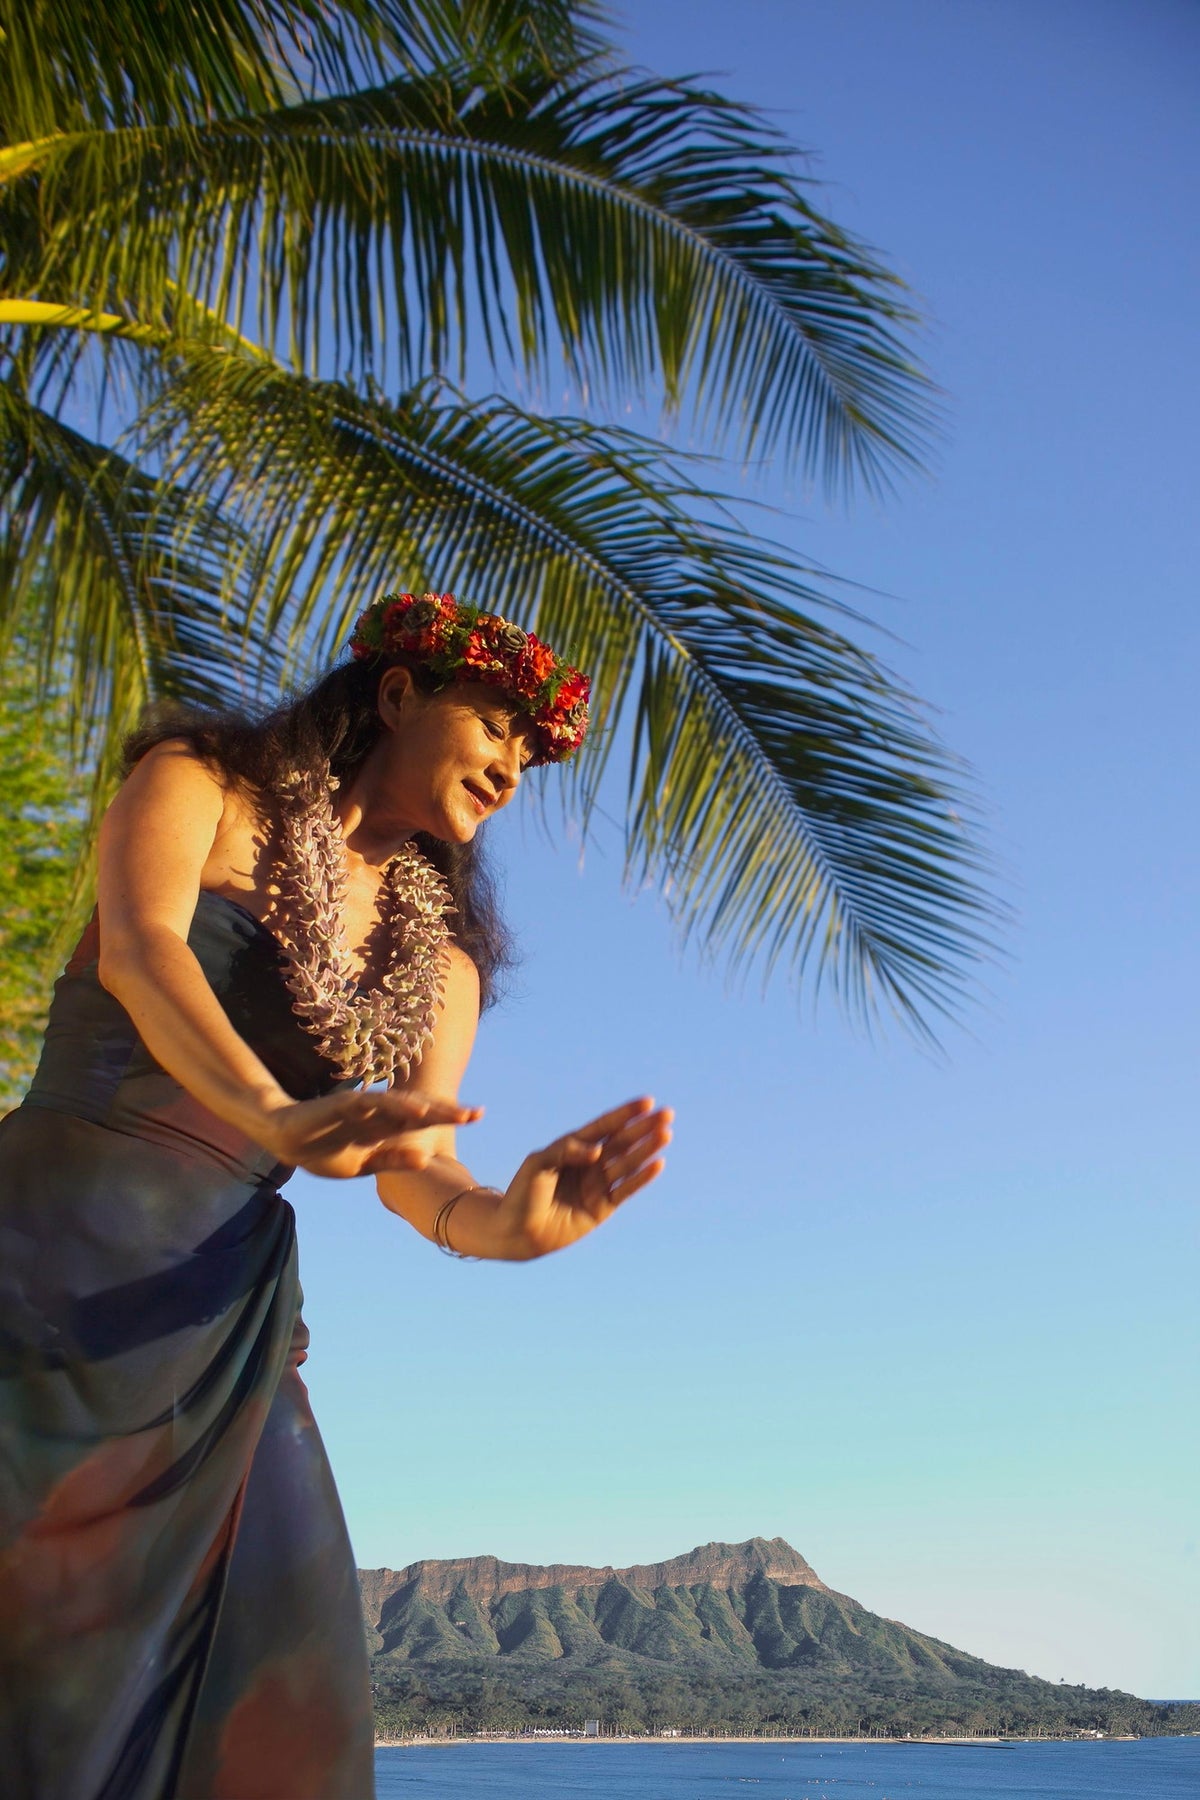 【ハウスウィズアウトアキー】樹齢100年のキアヴェの樹の毎夜繰り広げられるハワイアンミュージックとフラは過ぎ行く時間のすべてが愛おしく感じられるハワイでの特別なひとときに